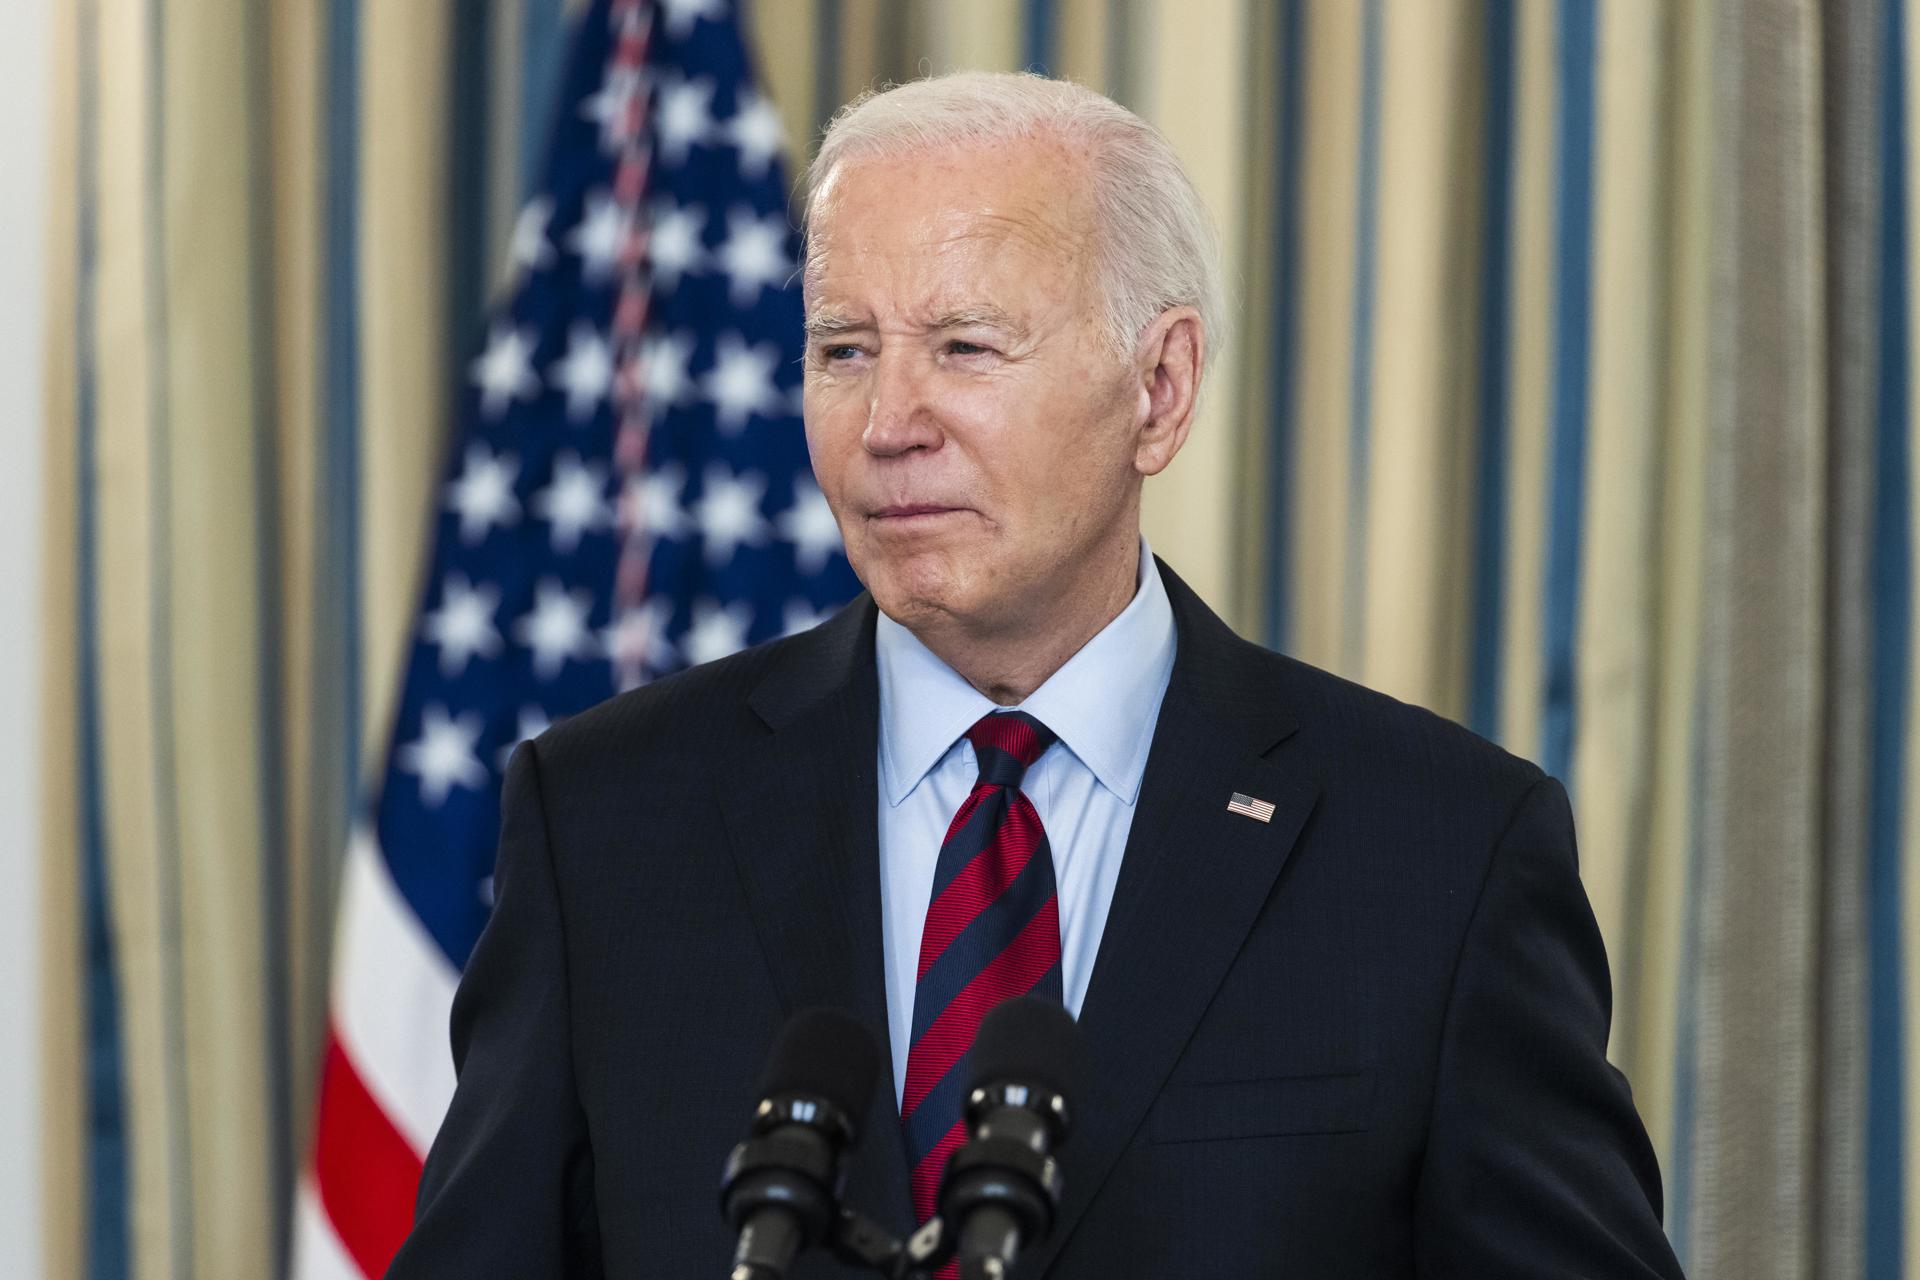 El presidente de Estados Unidos, Joe Biden, fue registrado este martes, 5 de marzo, durante un acto público, en la Casa Blanca, en Washington DC (EE,UU.). EFE/Jim Lo Scalzo/Pool